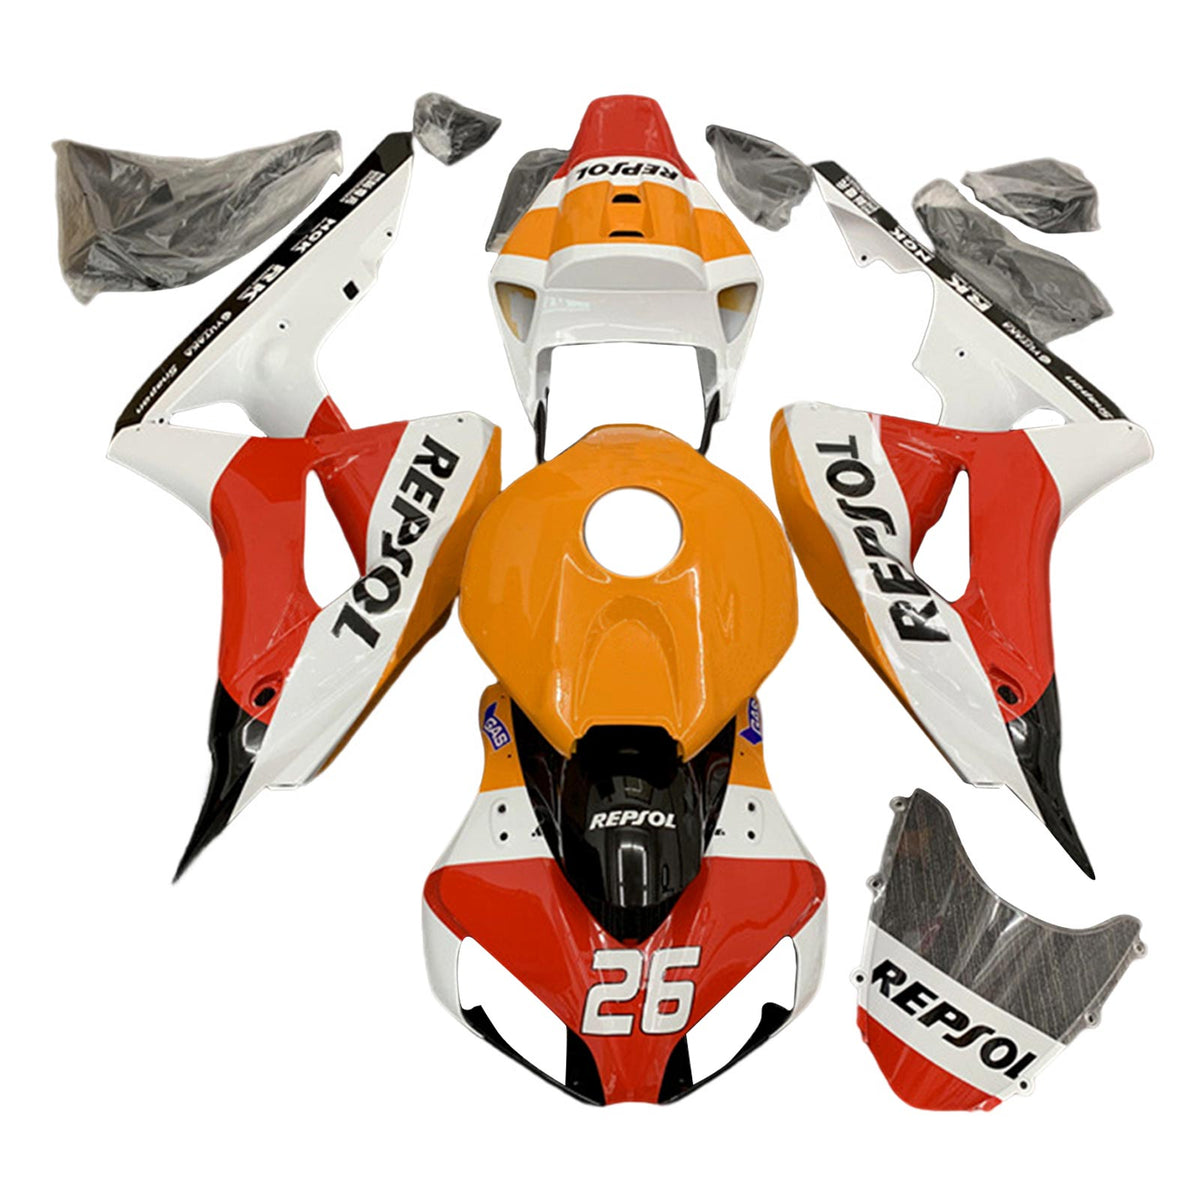 Amotopart 2006-2007 Honda CBR1000RR Orange&Red Repjol Fairing Kit